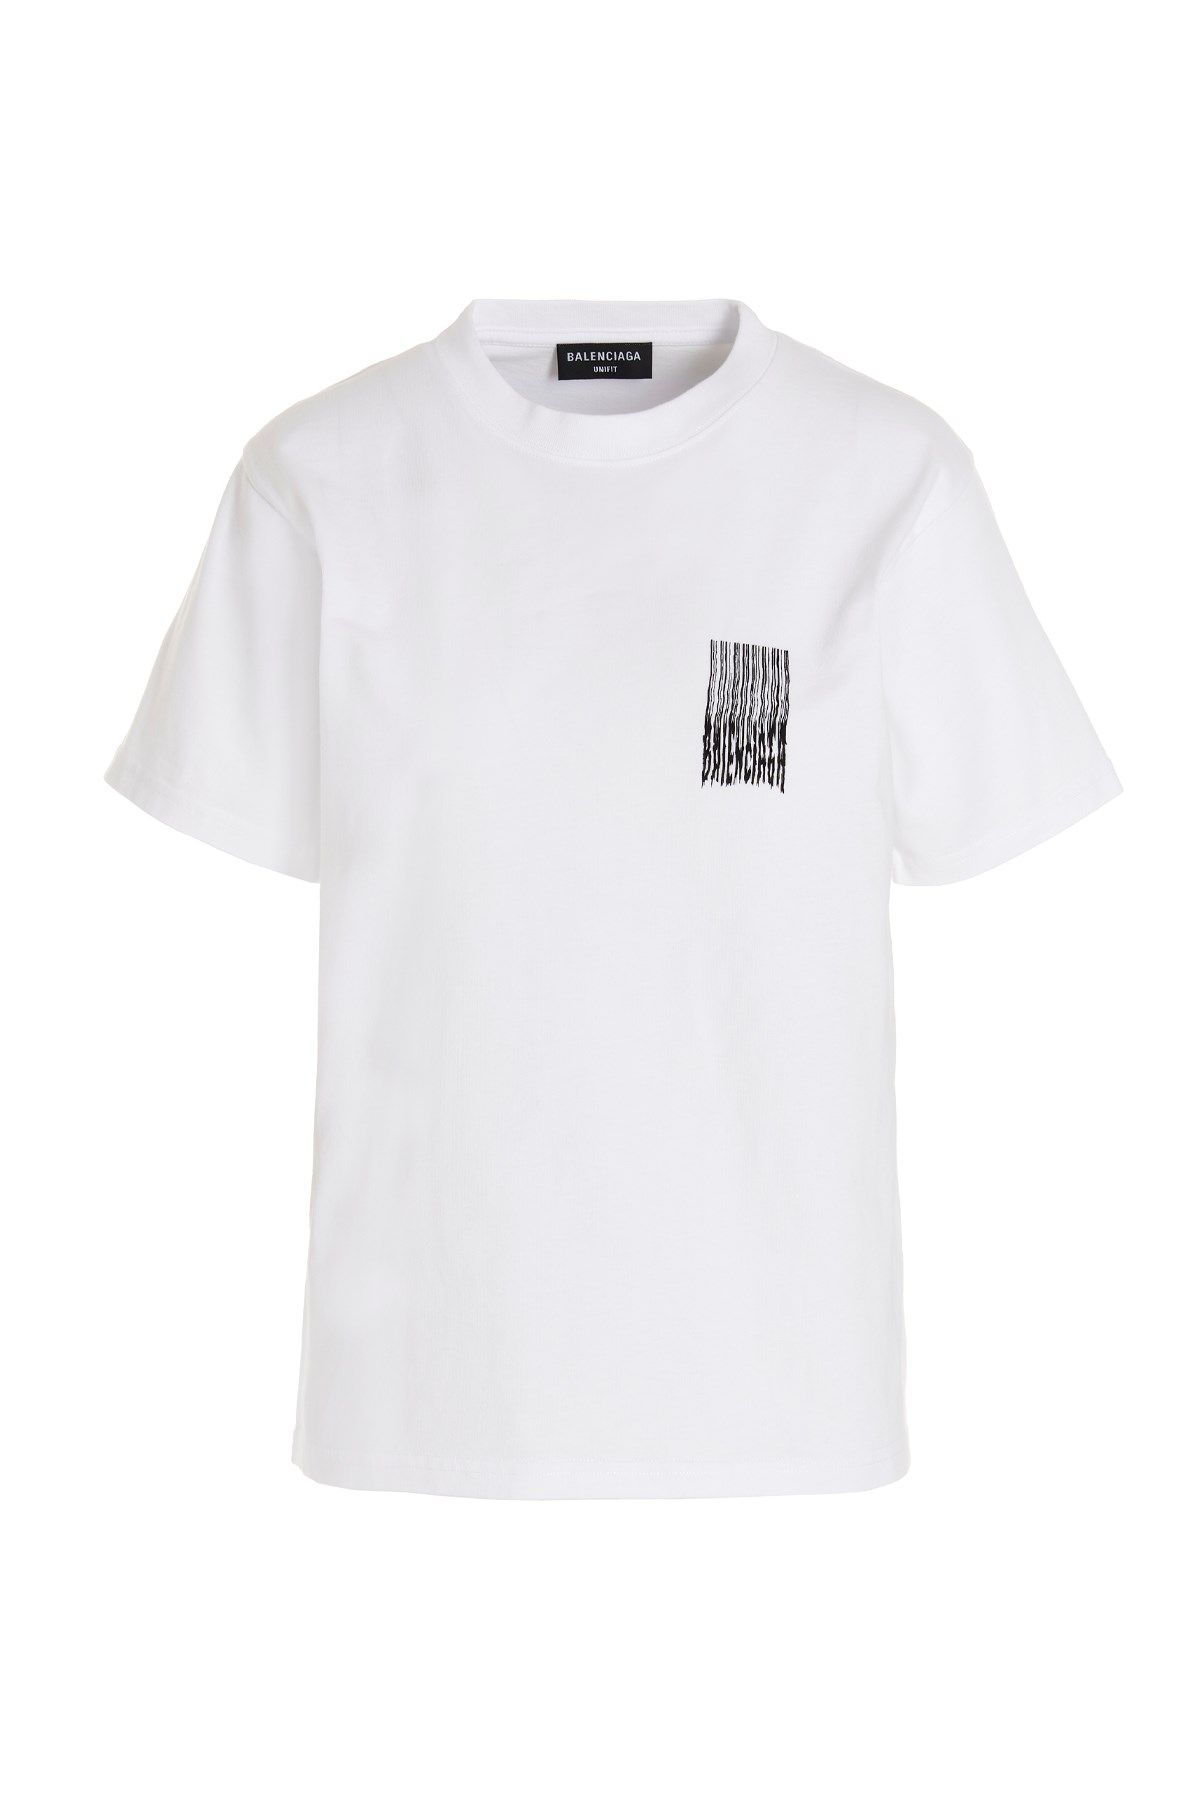 BALENCIAGA ‘Barcode’ T-Shirt